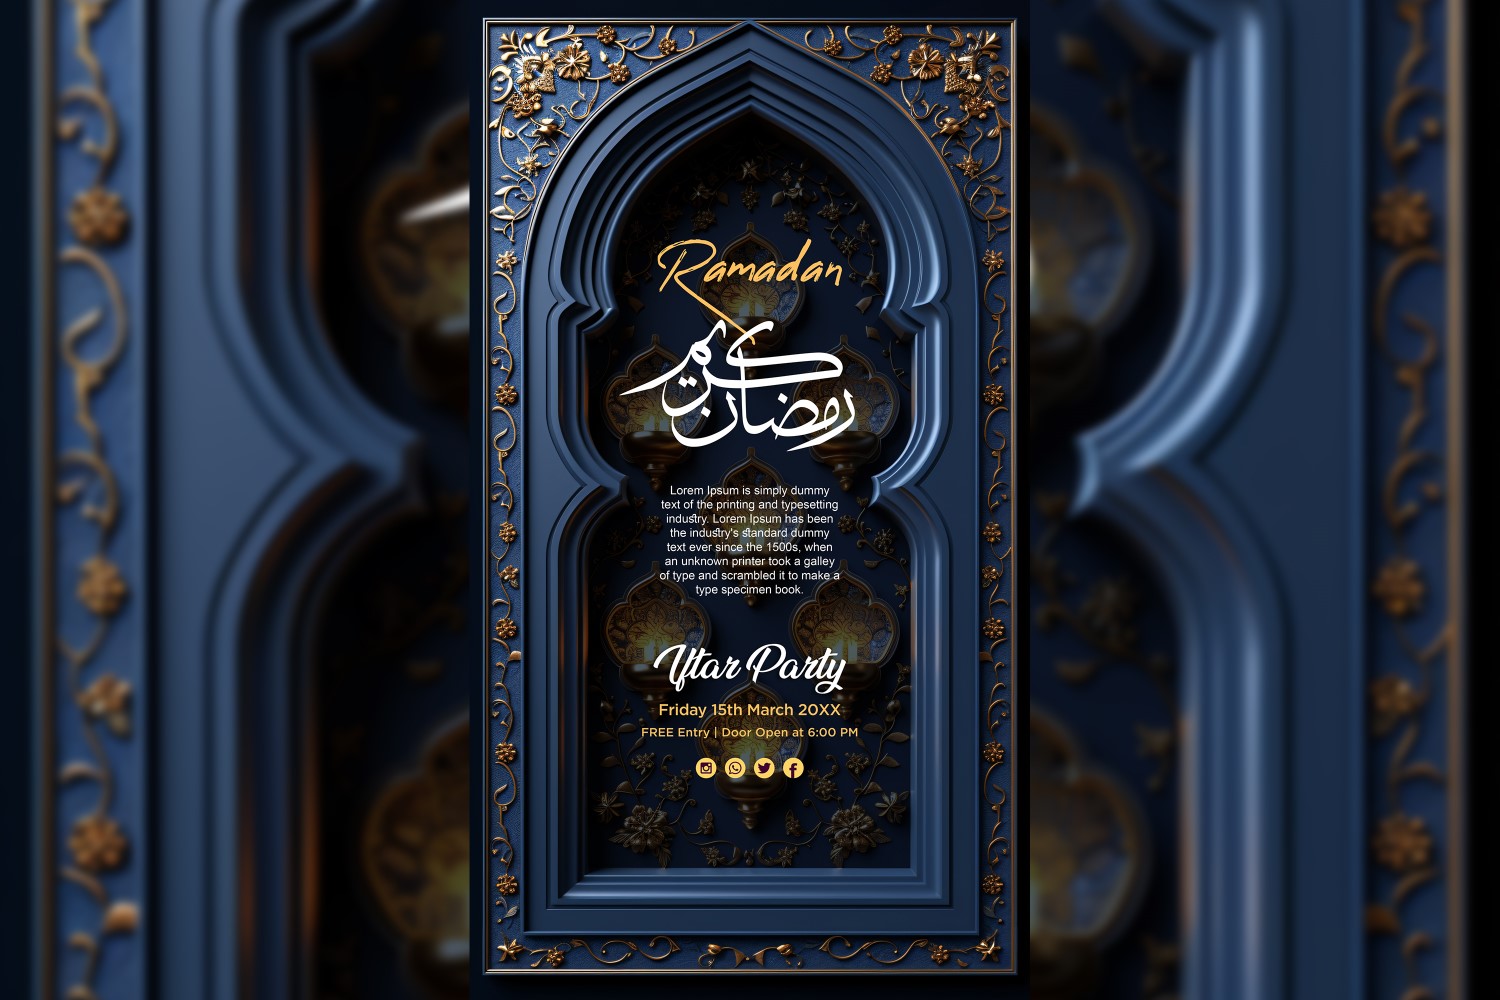 Ramadan Iftar Party Poster Design Template 12